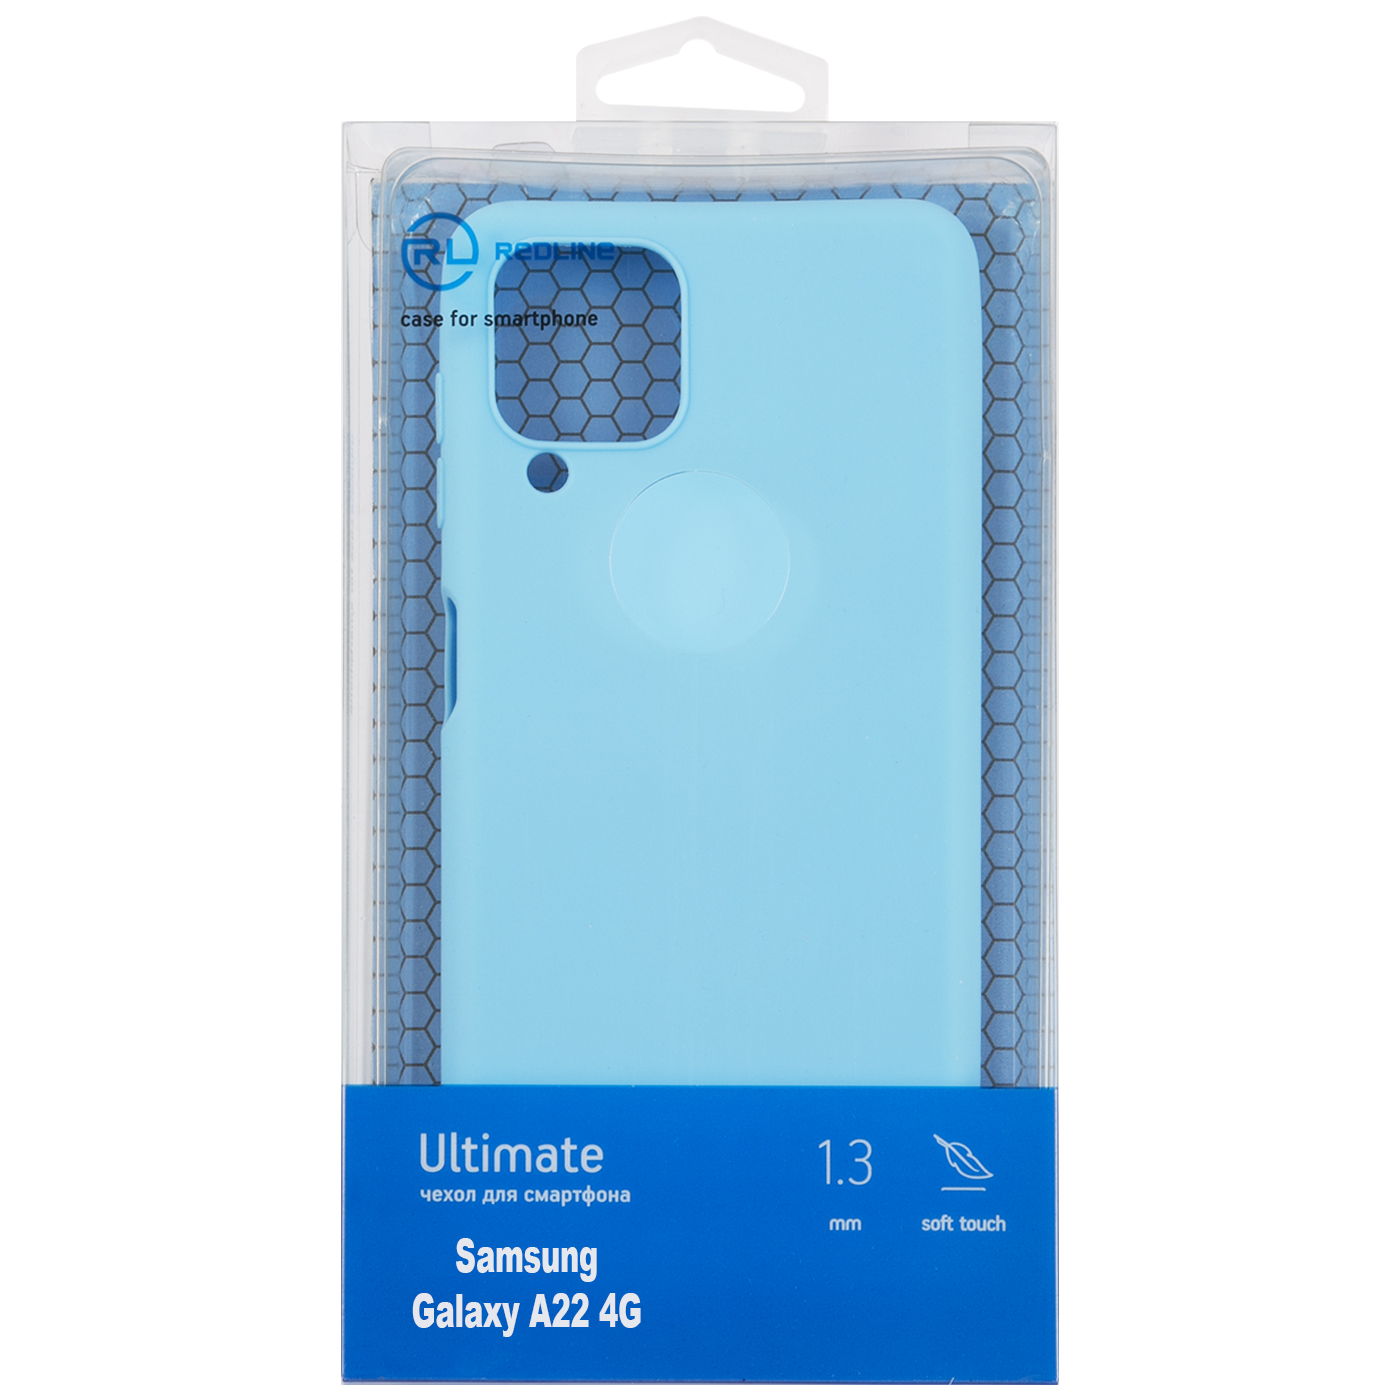 Чехол защитный Red Line Ultimate для Samsung Galaxy A22 4G, голубой УТ000025028 комплект 4 штук чехол защитный red line ultimate для samsung galaxy a22 4g черный